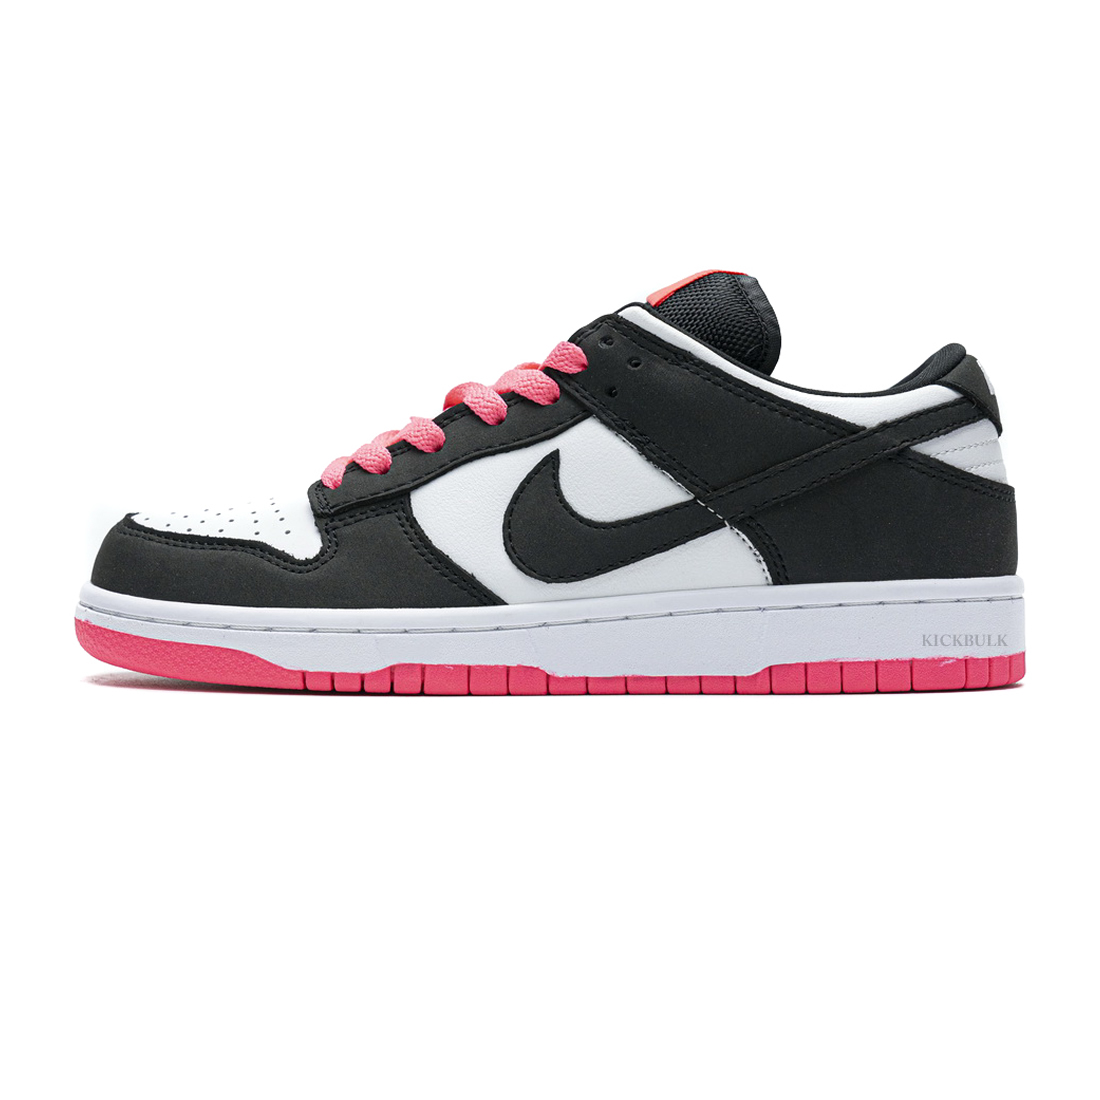 Nike Dunk Low Pro Se Black White Peach 317813 100 1 - www.kickbulk.co